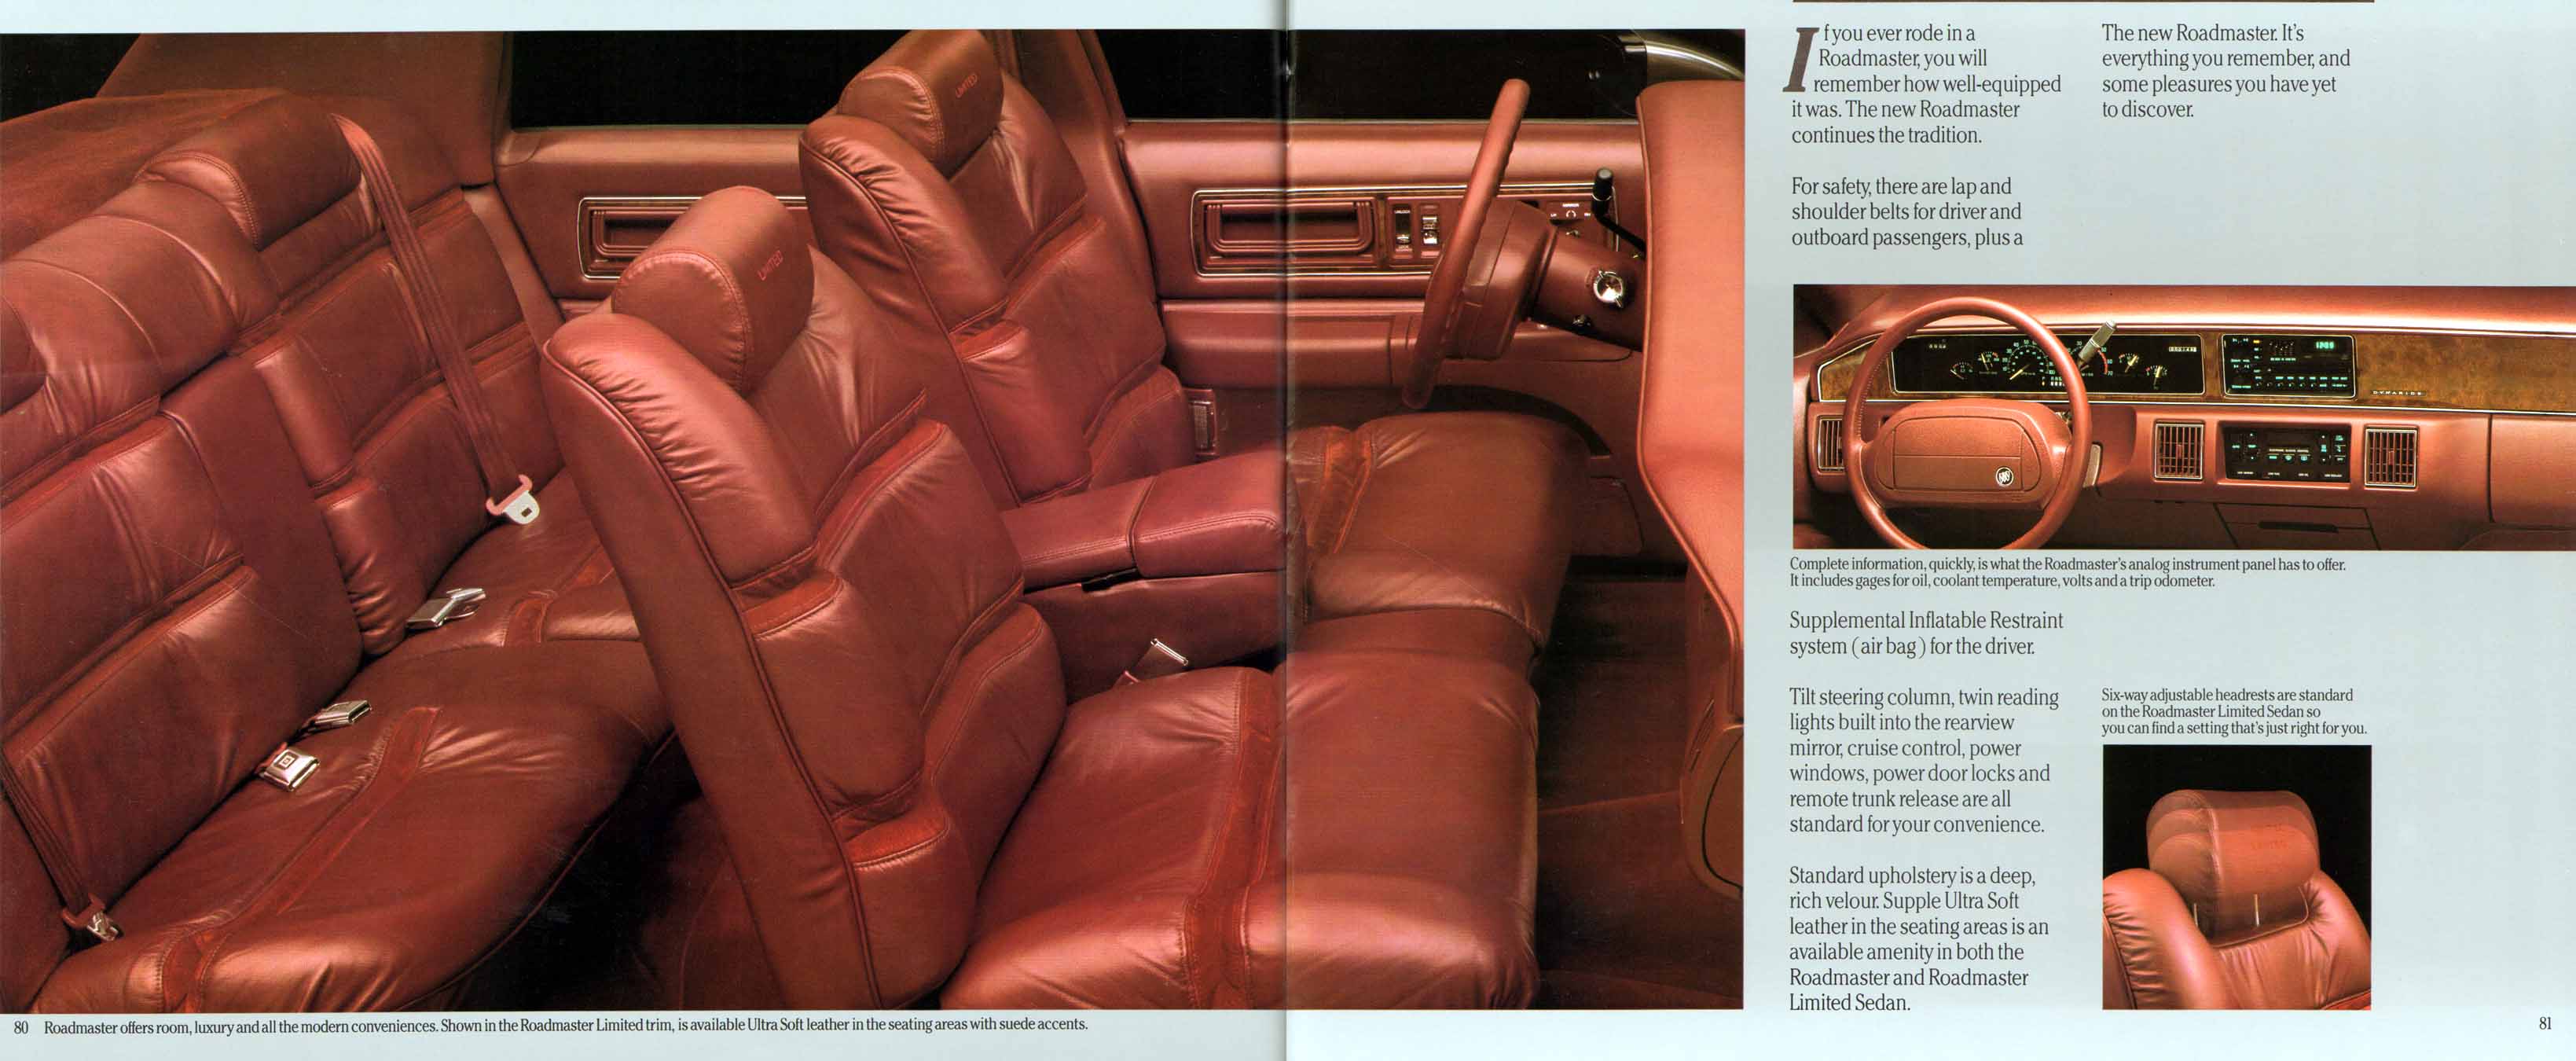 1991 Buick Full Line Prestige-82-83